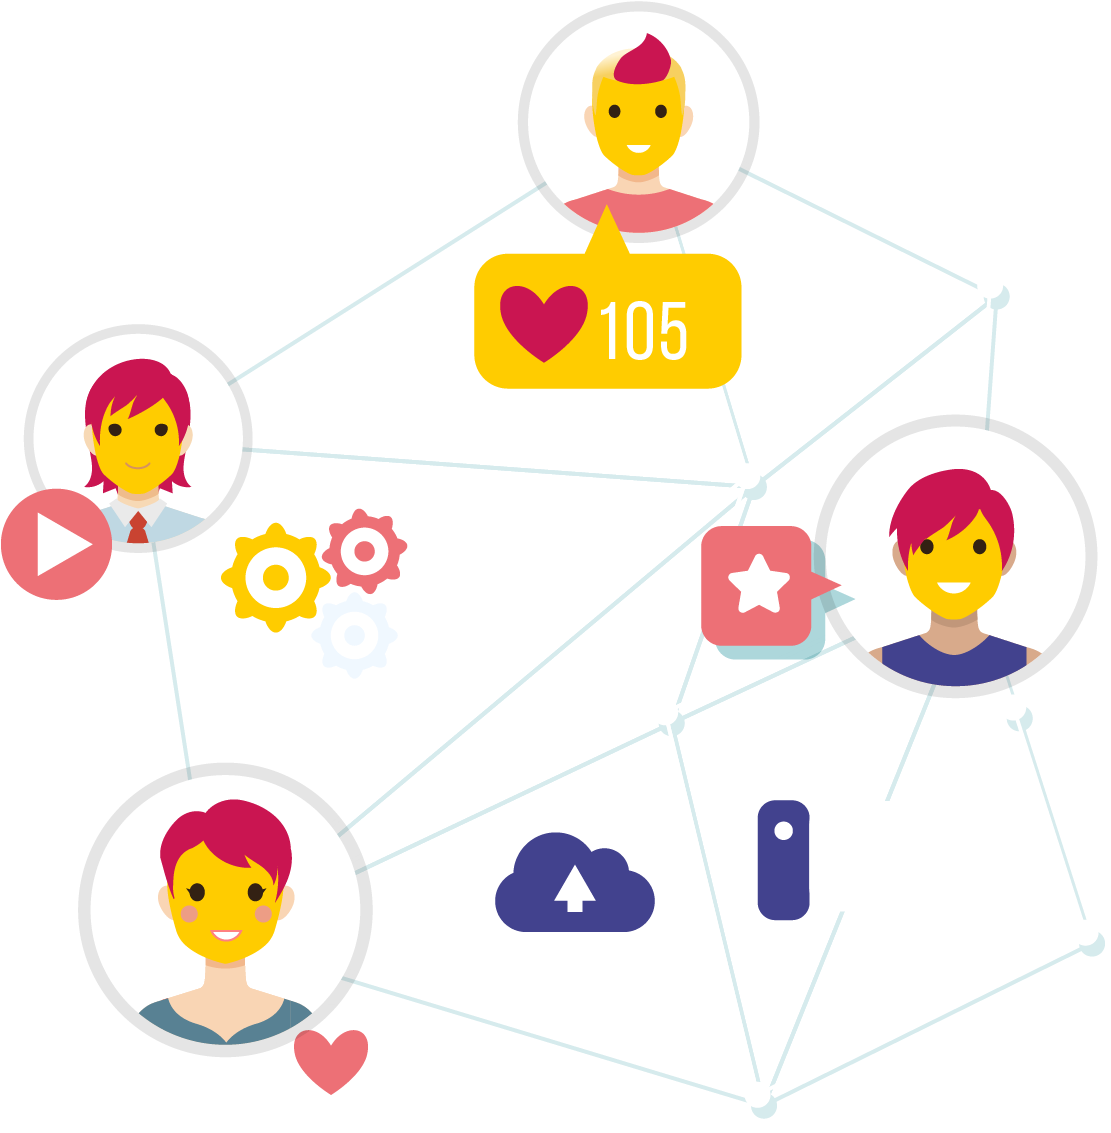 Social Media Marketing - Social Network Cartoon (1200x1200)